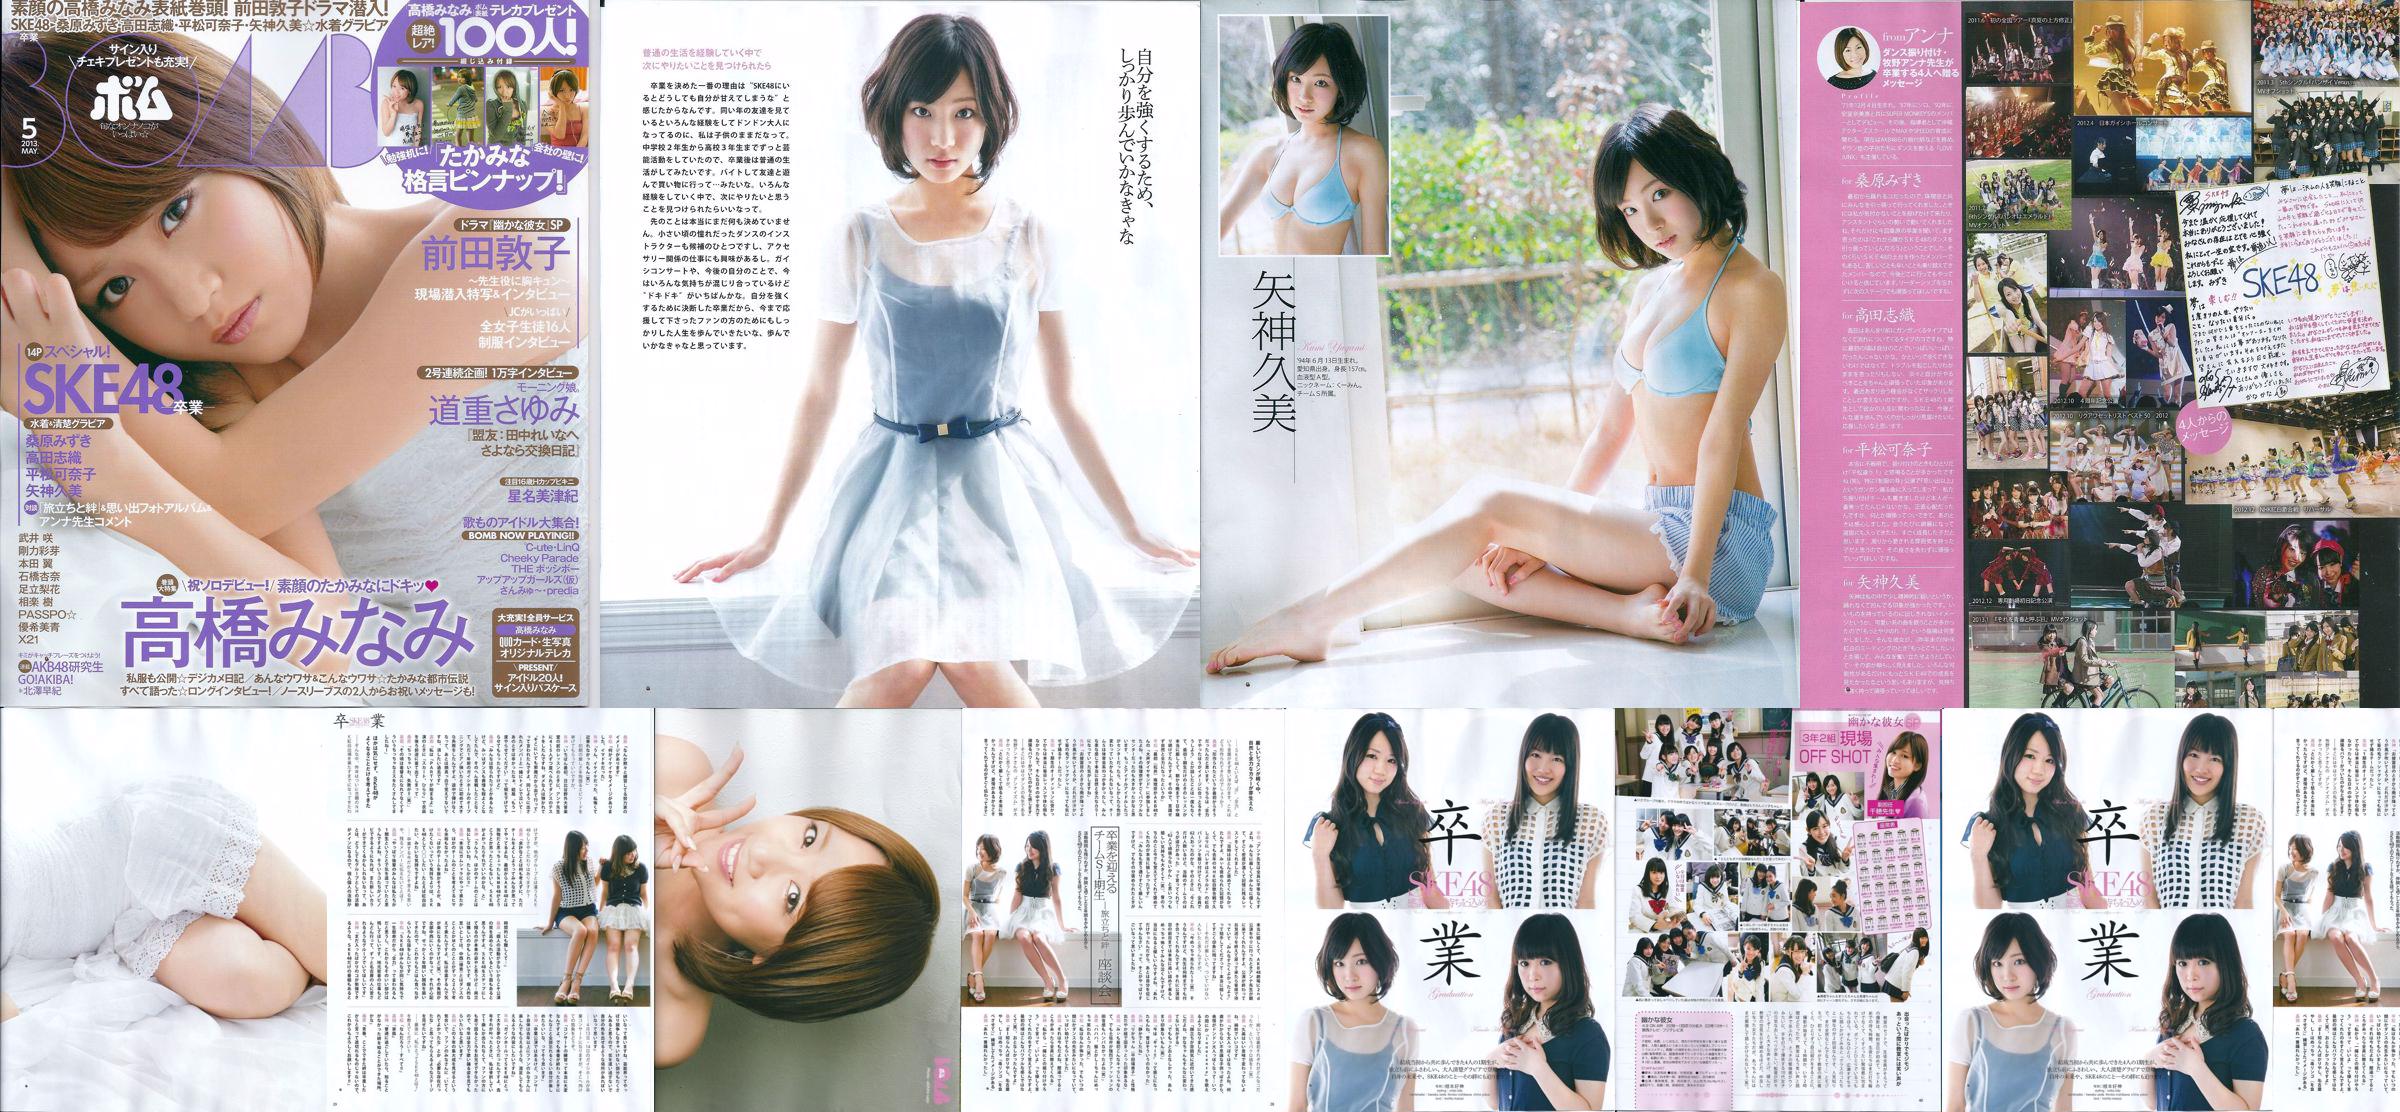 [Bomb Magazine] 2013 No.05 Kumi Yagami Minami Takahashi Atsuko Maeda Foto No.a57d3f Seite 5